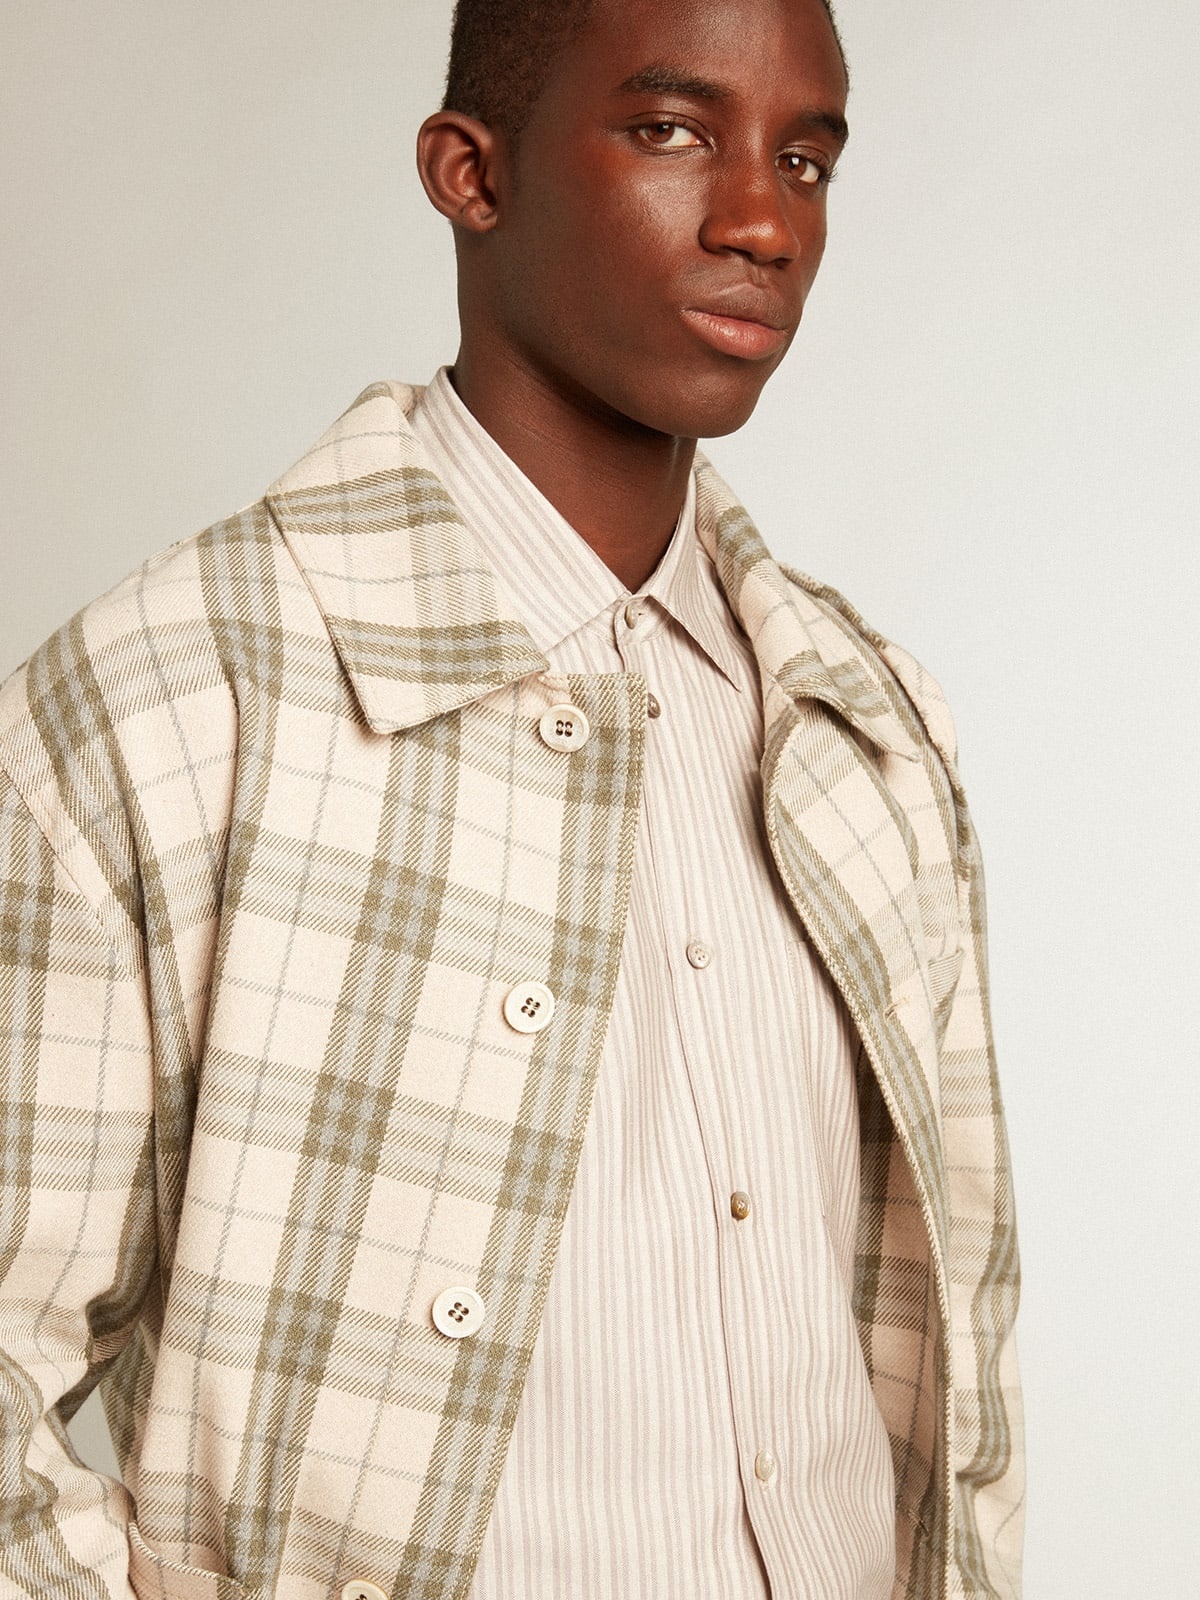 Men's viscose-blend linen shirt with striped pattern - 5